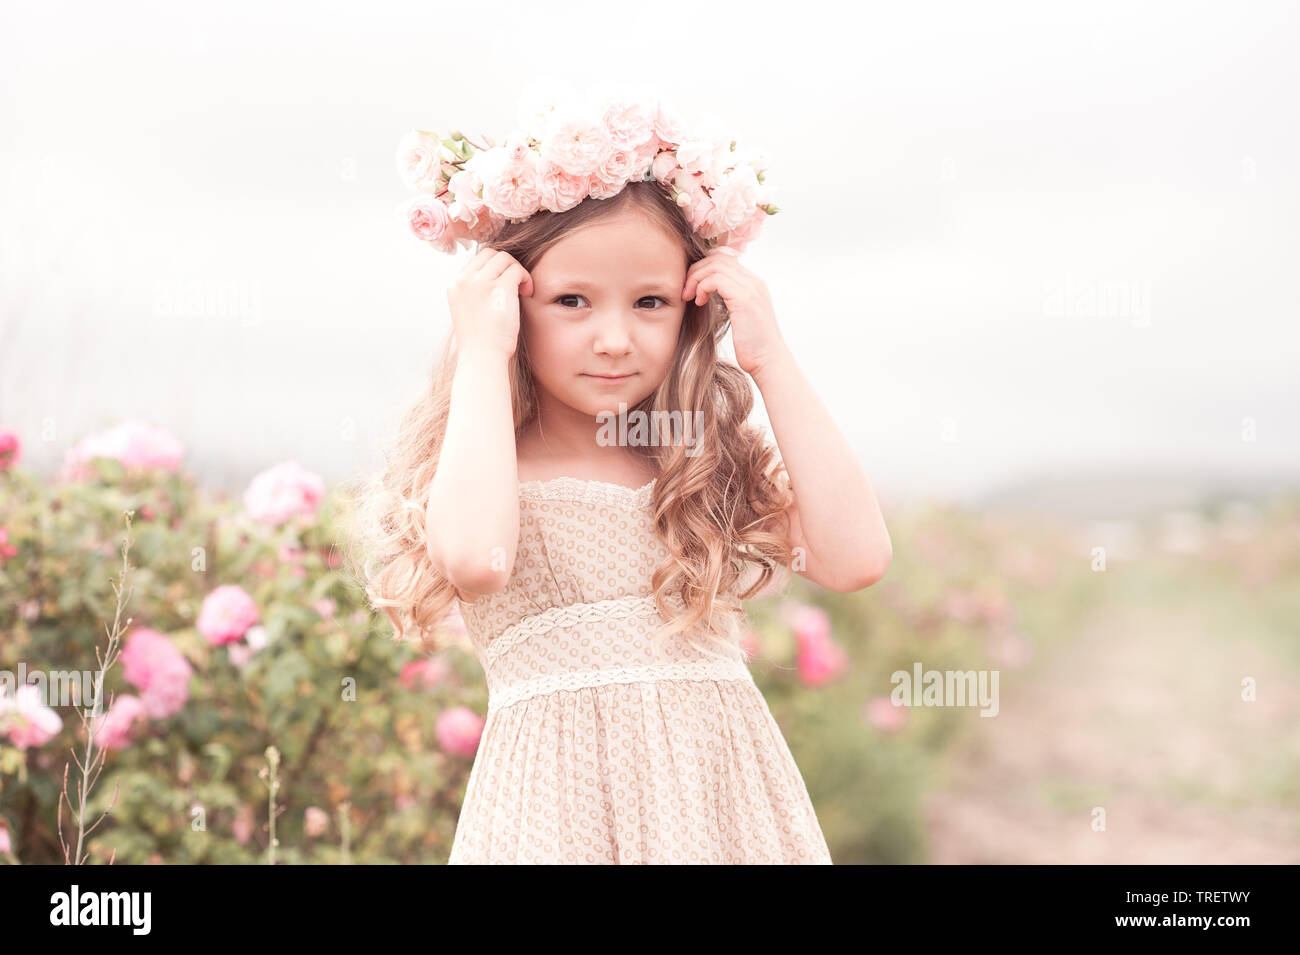 Sommer Portrait Von Baby Madchen Tragen Trendige Kleidung Und Frisur Mit Rosen Im Freien Mit Blick Auf Die Kamera Stockfotografie Alamy